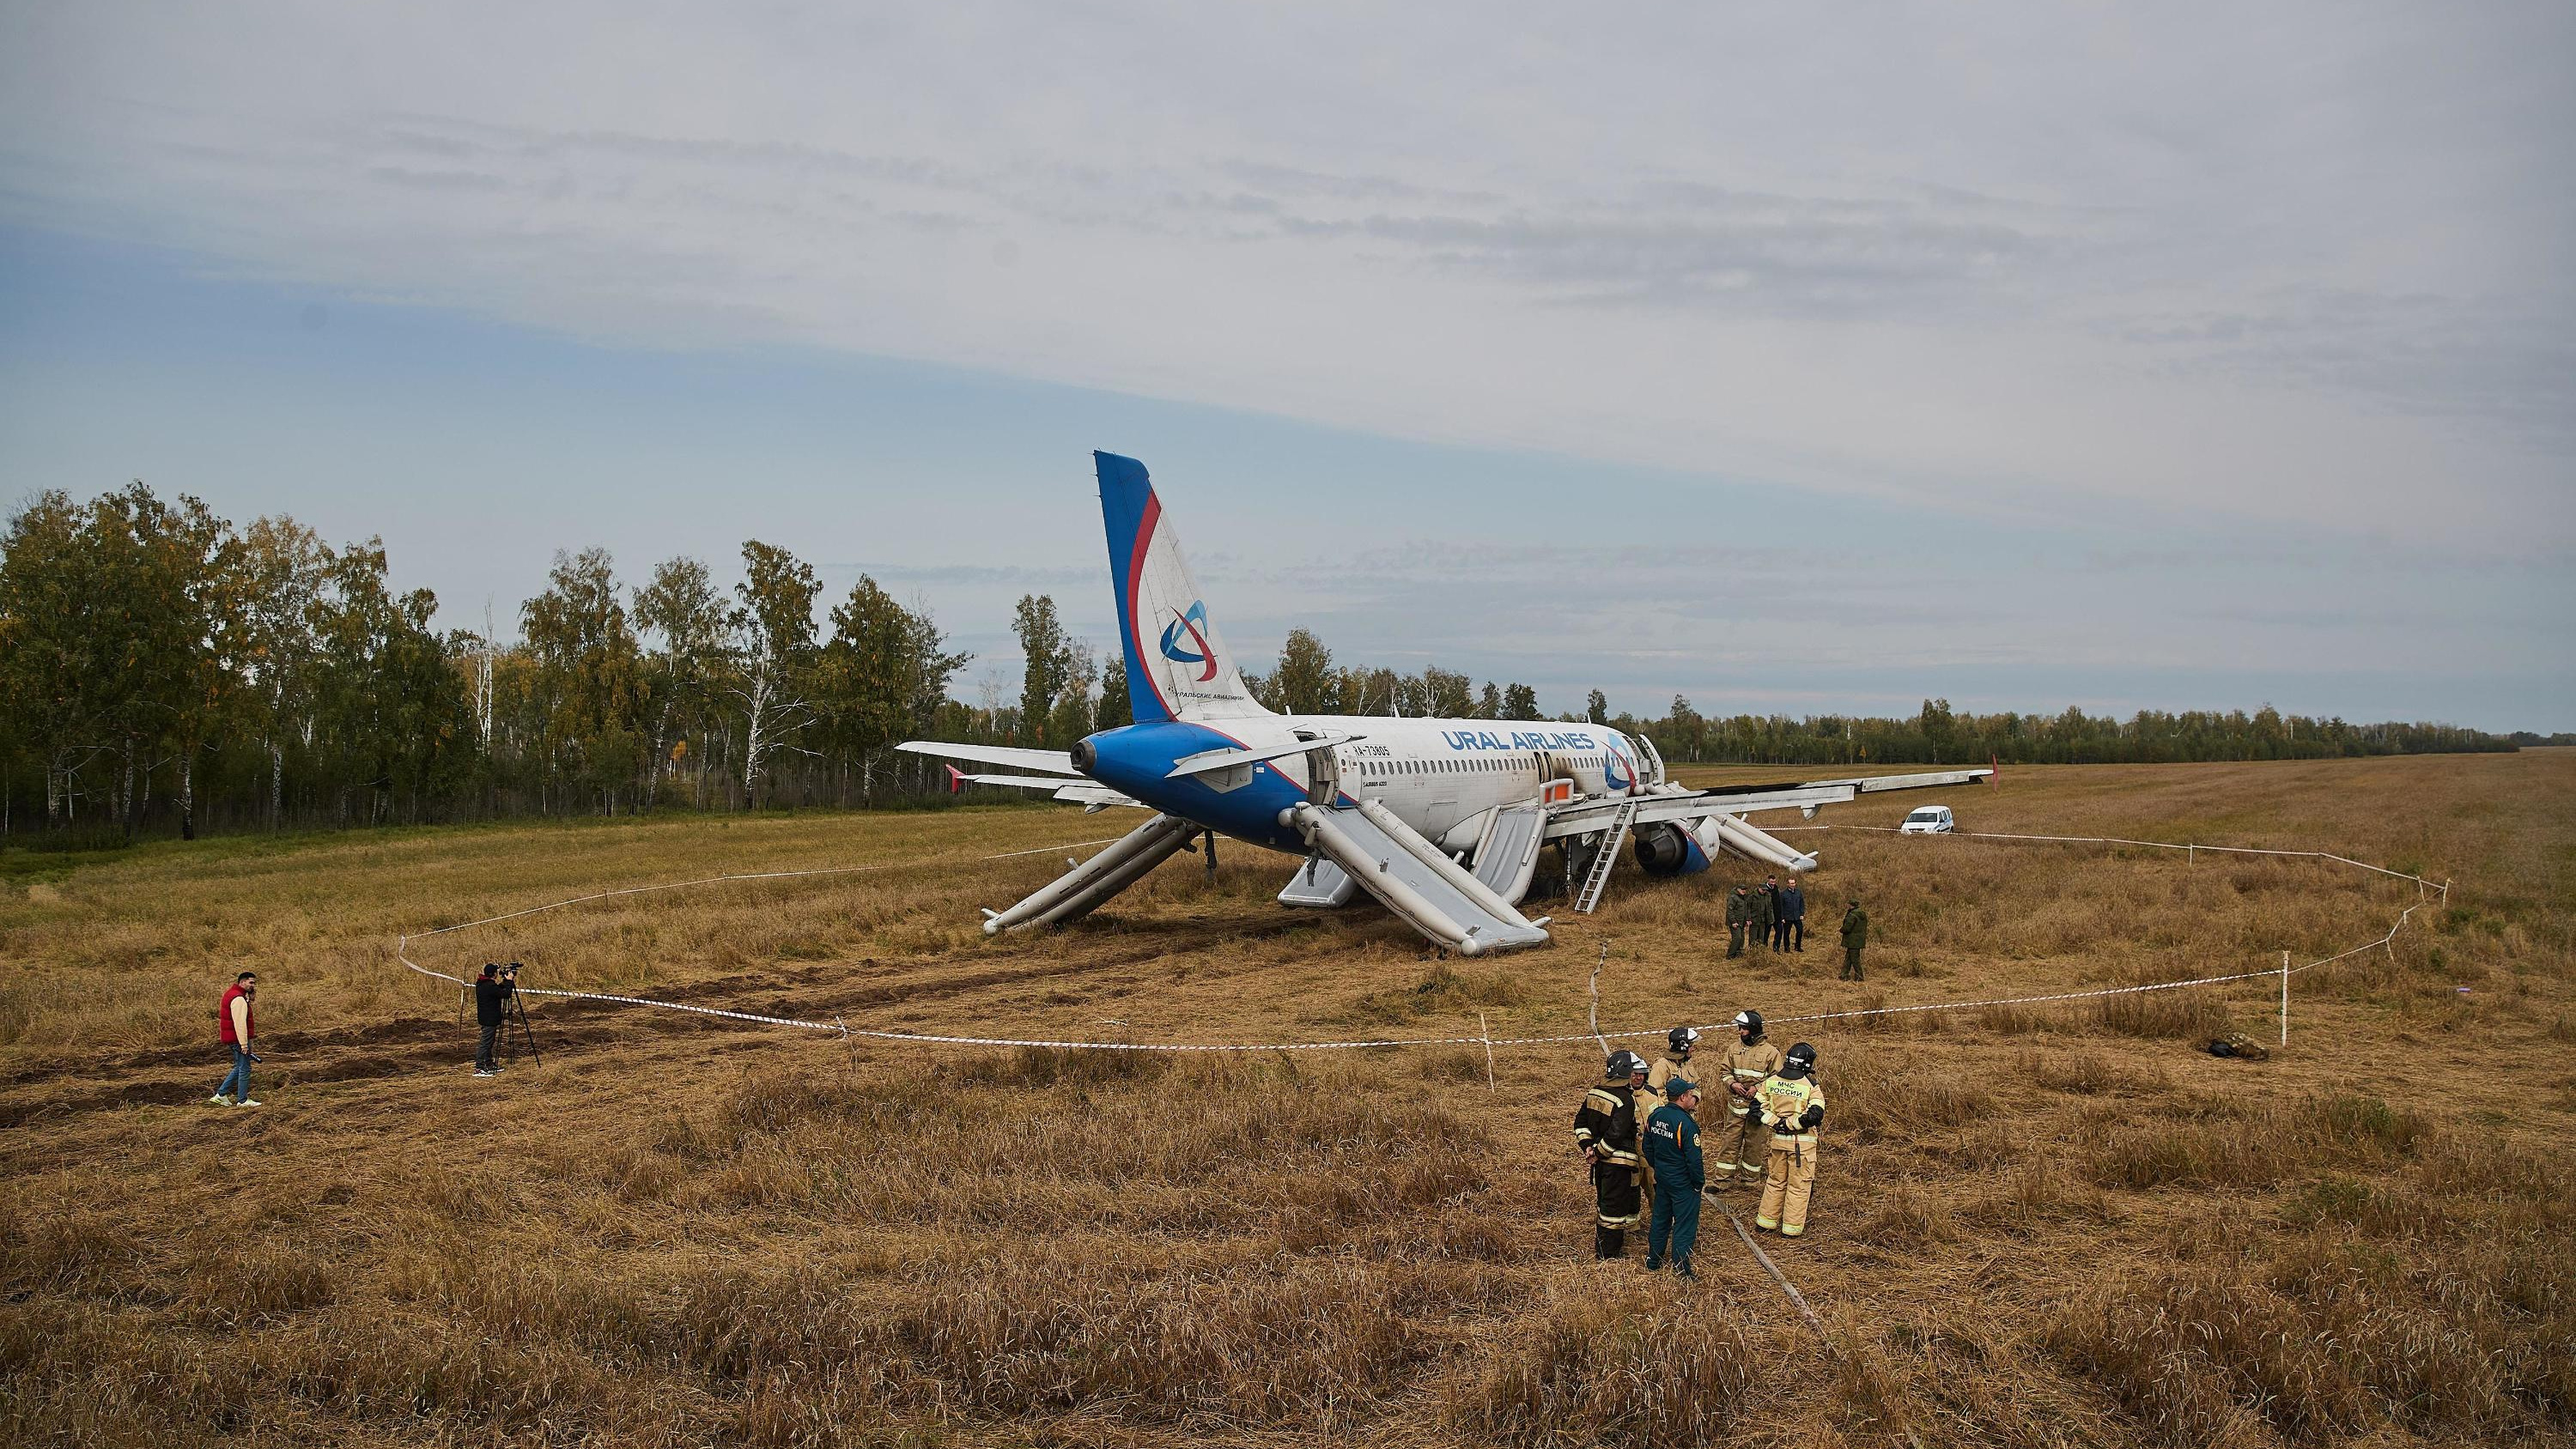 Колхоз договорился с «Уральскими авиалиниями» о компенсации в 200 тысяч за посадку самолета в их пшеницу